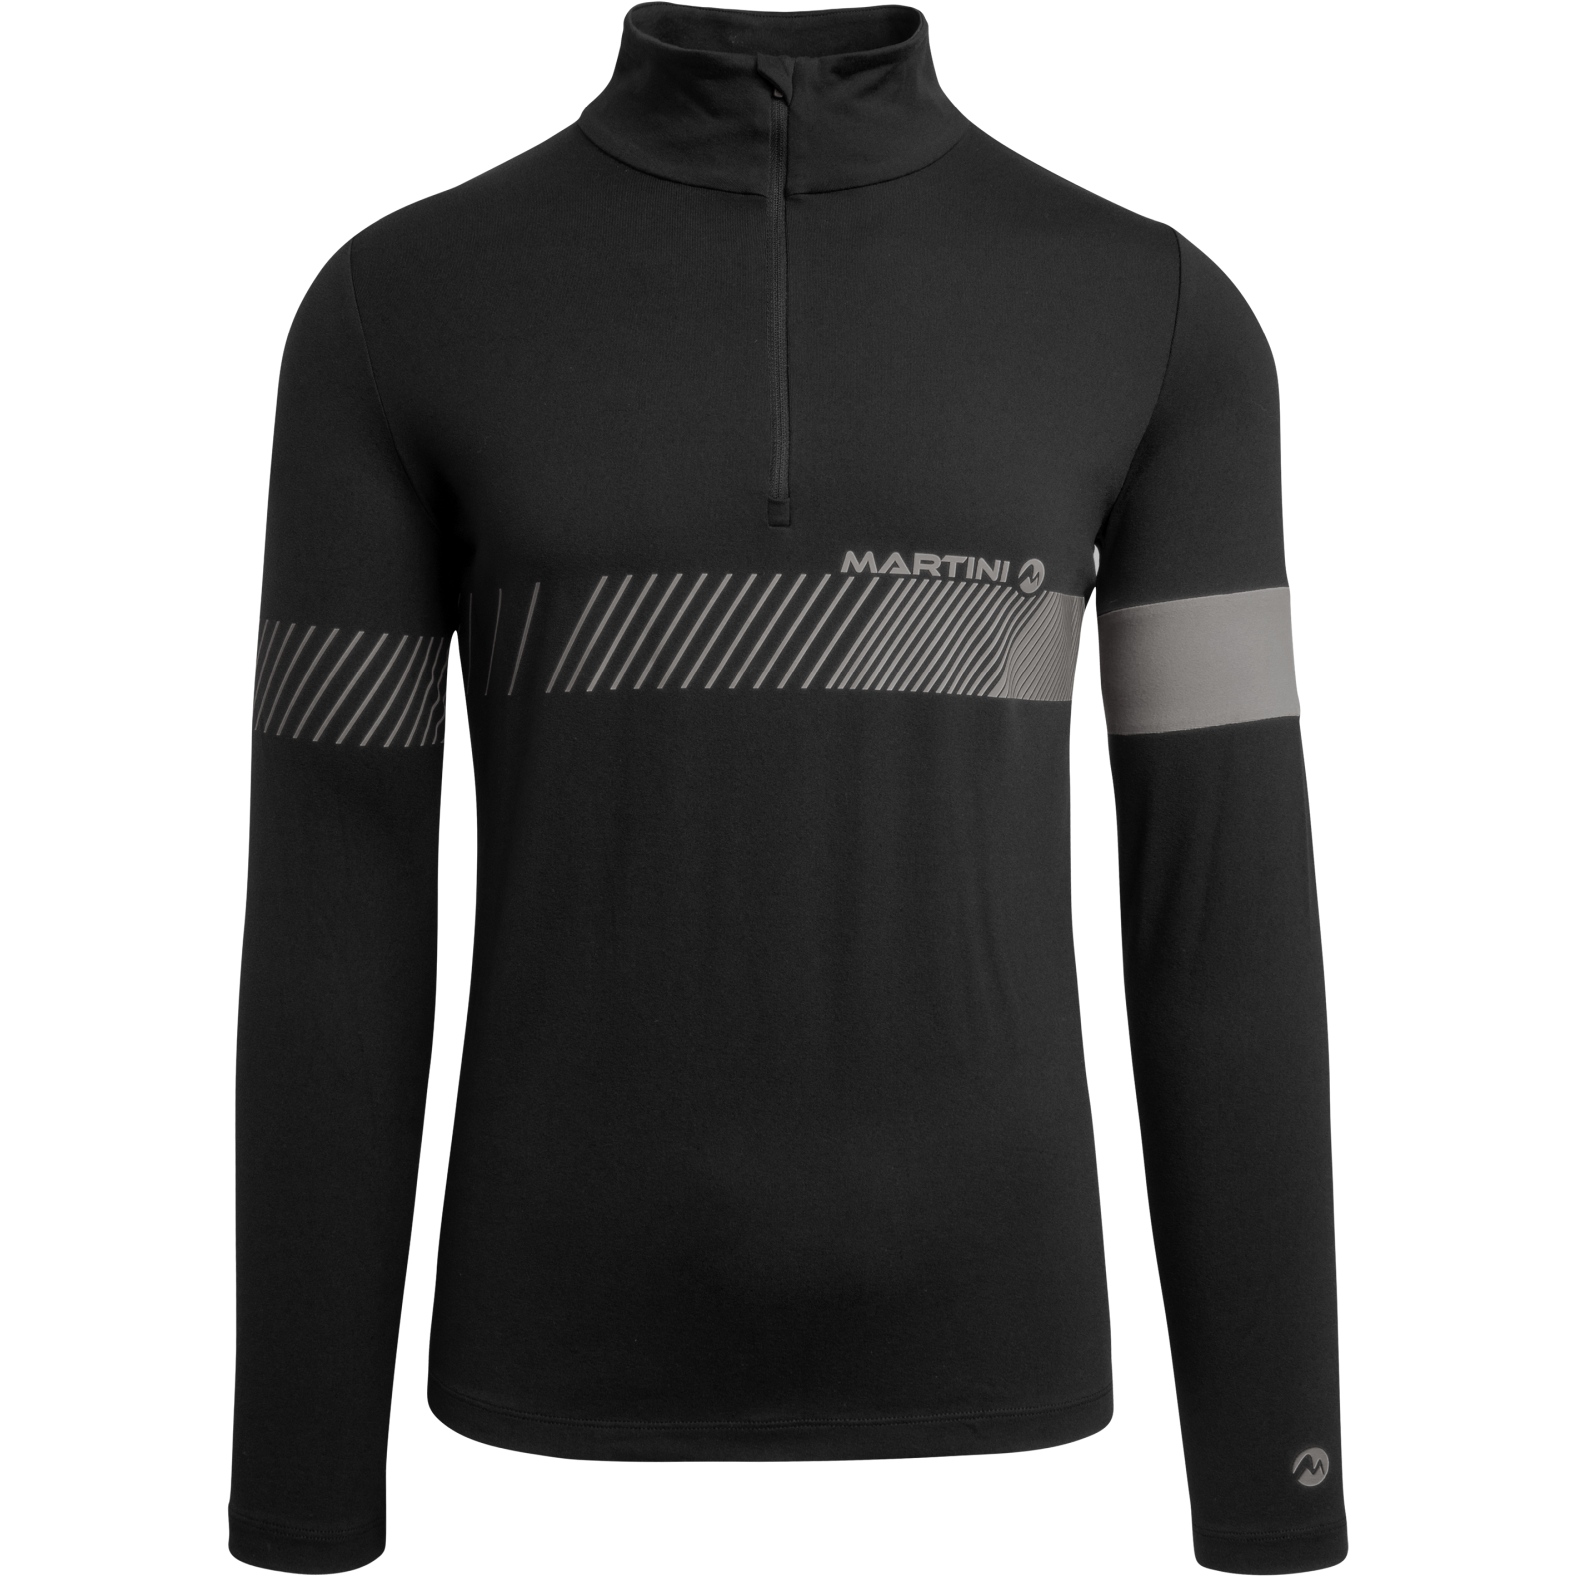 Produktbild von Martini Sportswear Pinnacle Langarm-Shirt Herren - black_carbon